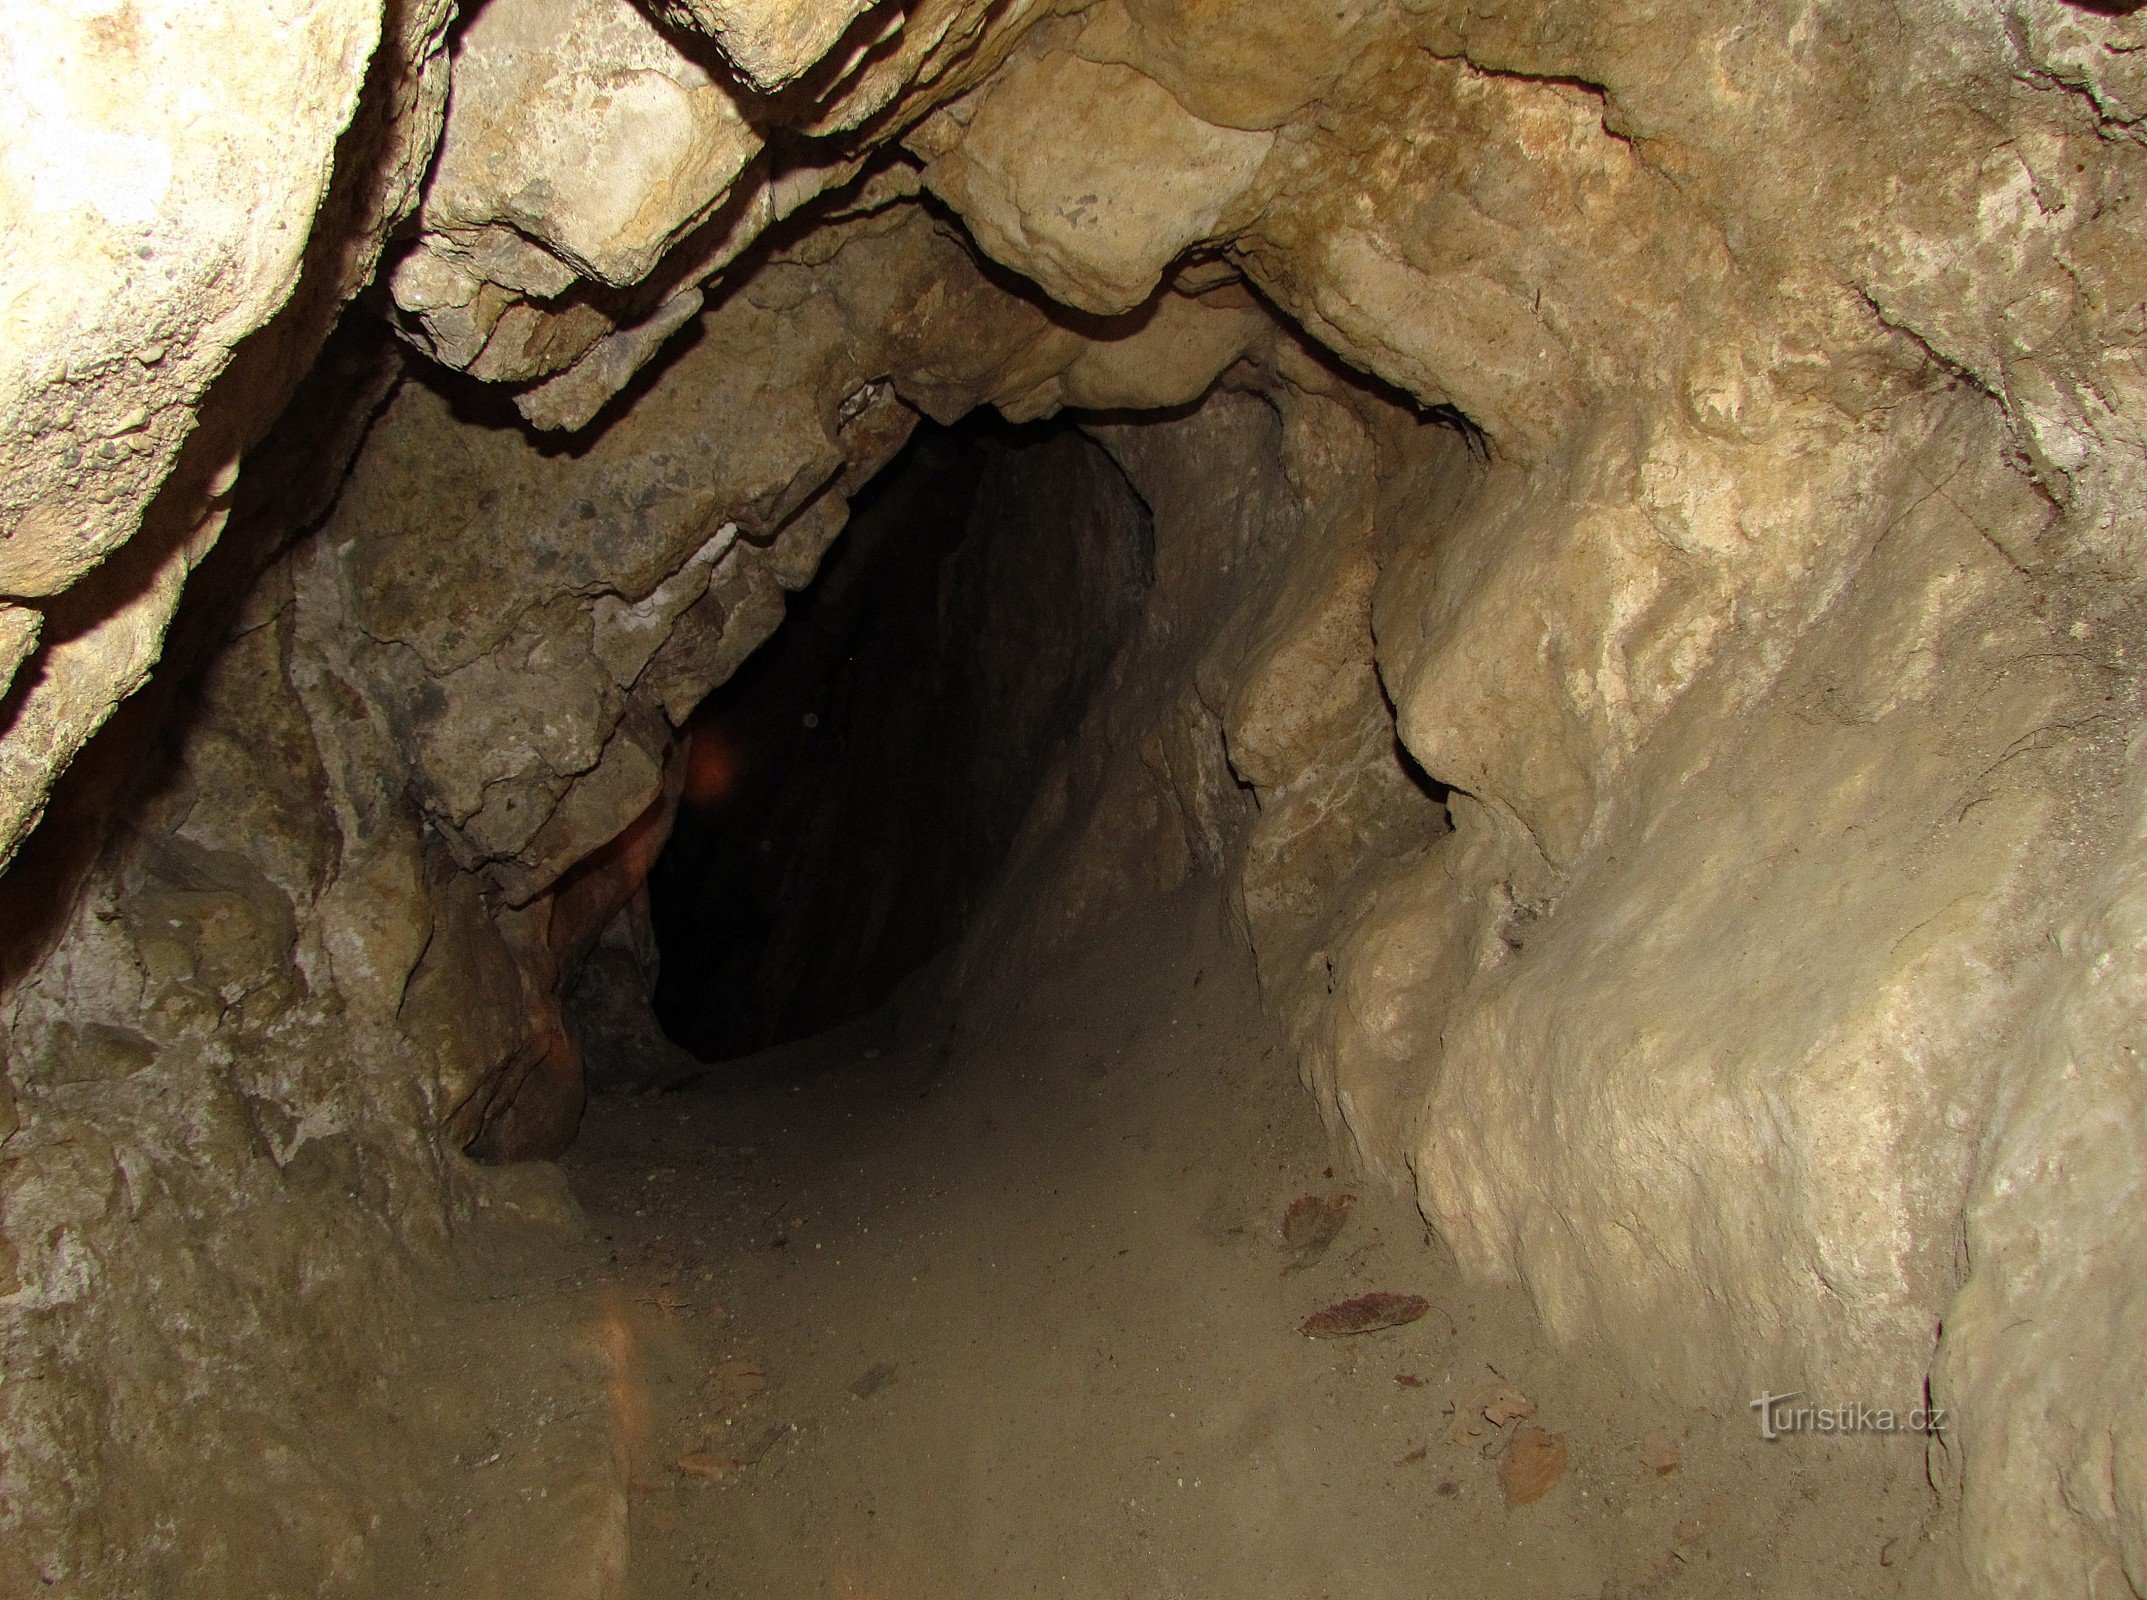 Za tajemstvím Čecheru - pseudokrasová jeskyně